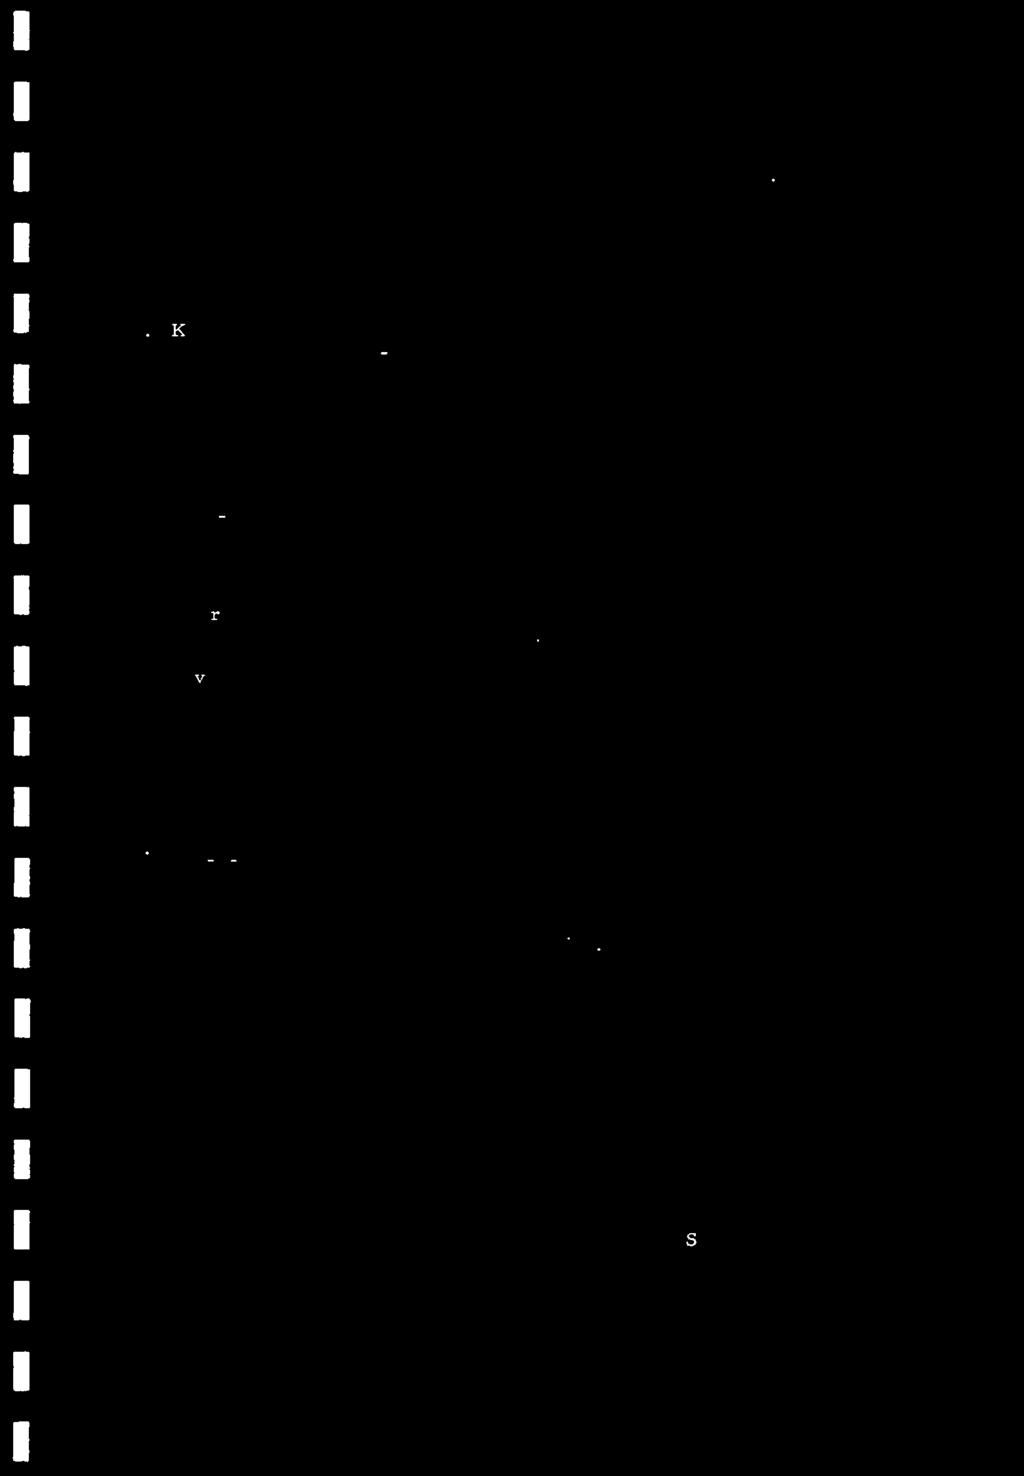 Svake V-anomalier opptrer parallelt med Zn-anornaliene, men er lite markerte. Kontakten Rorvikfyllitt-gneisgranitt synes i dette orofil ikke ;t markere seg geokjernisk.